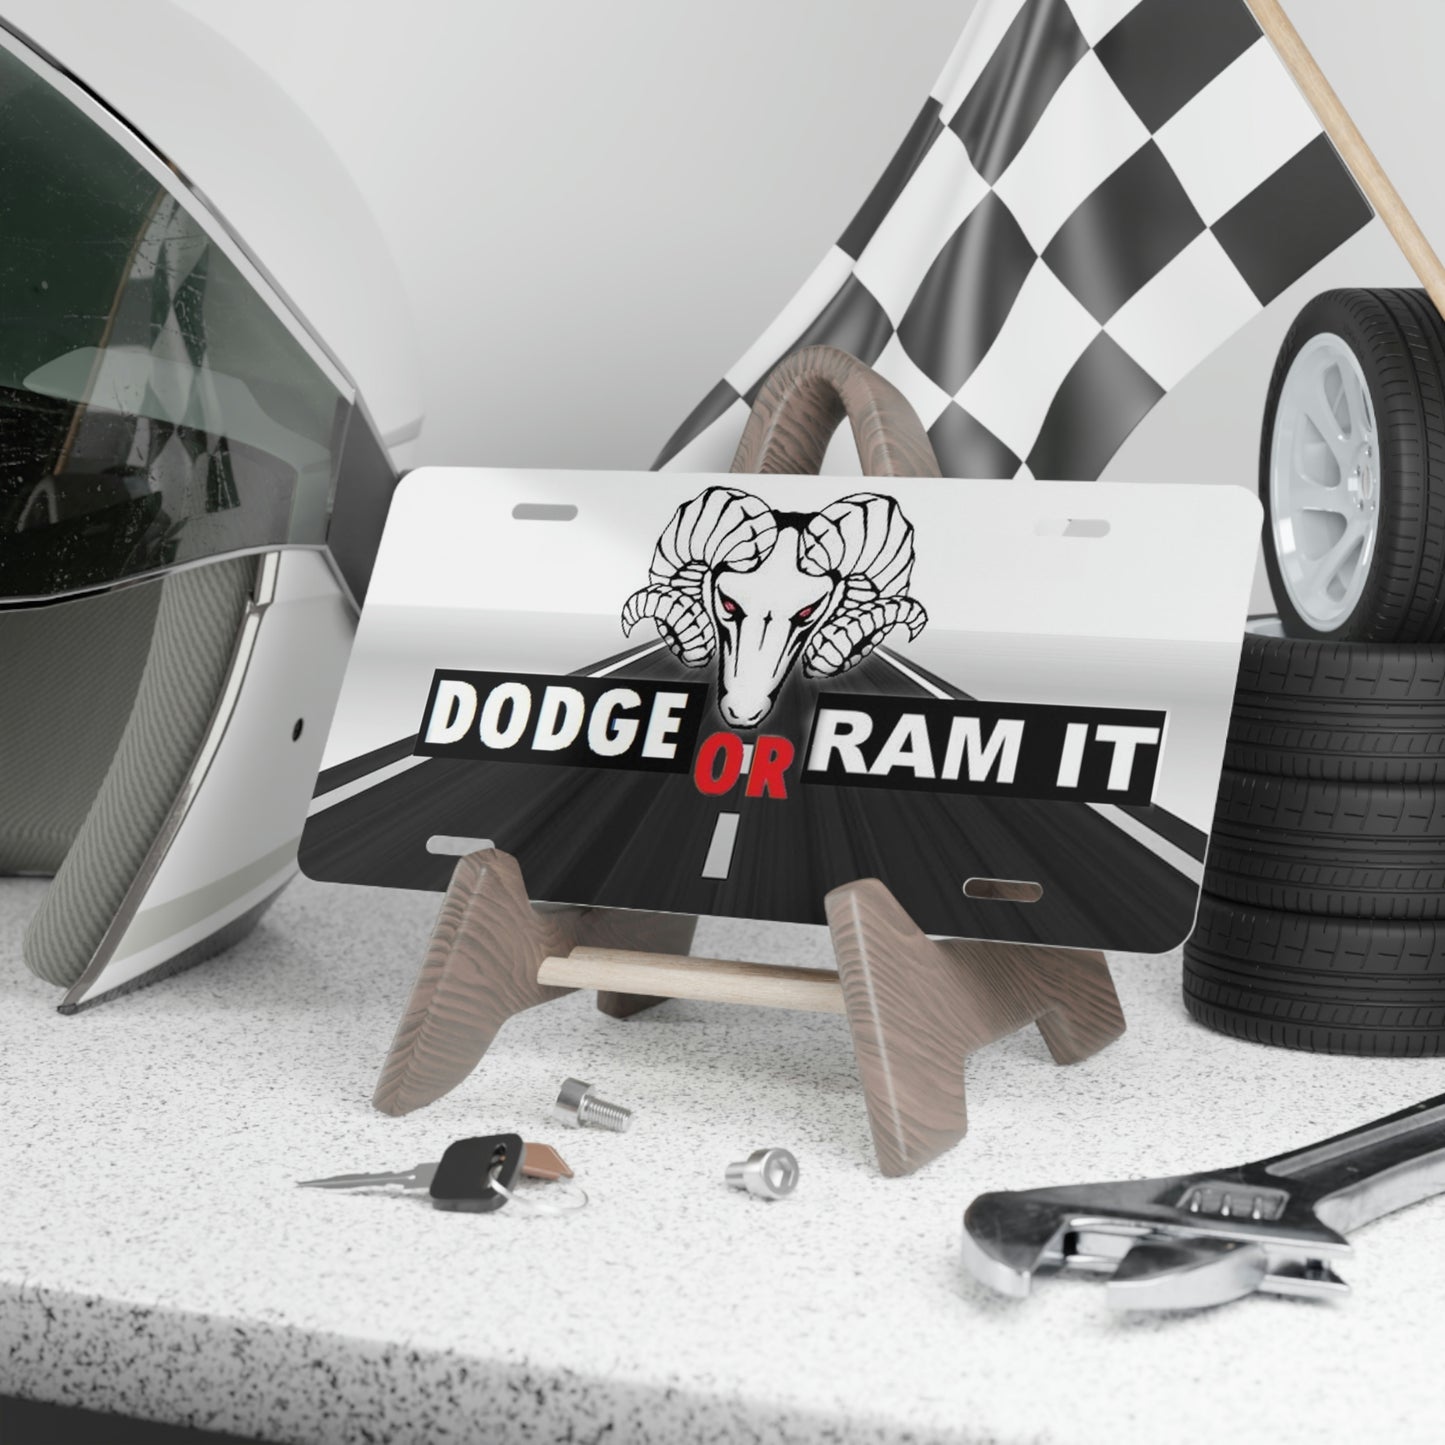 Dodge Or Ram Vanity License Plate